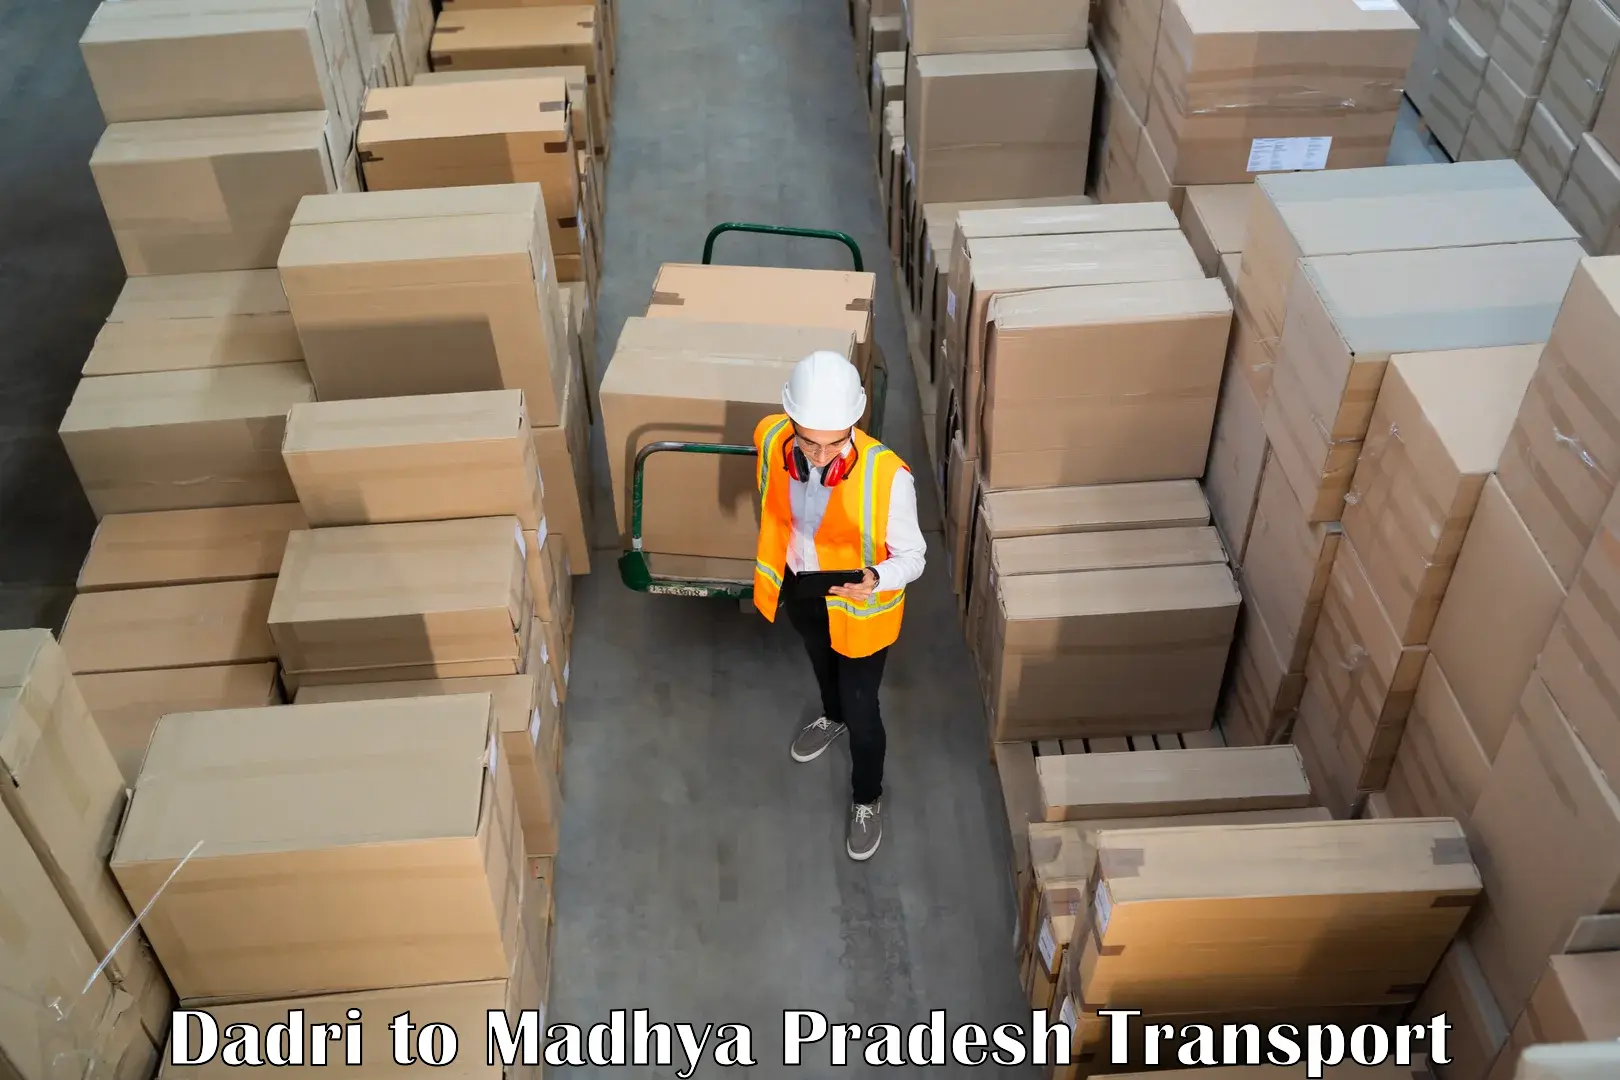 Daily parcel service transport in Dadri to Rampur Baghelan